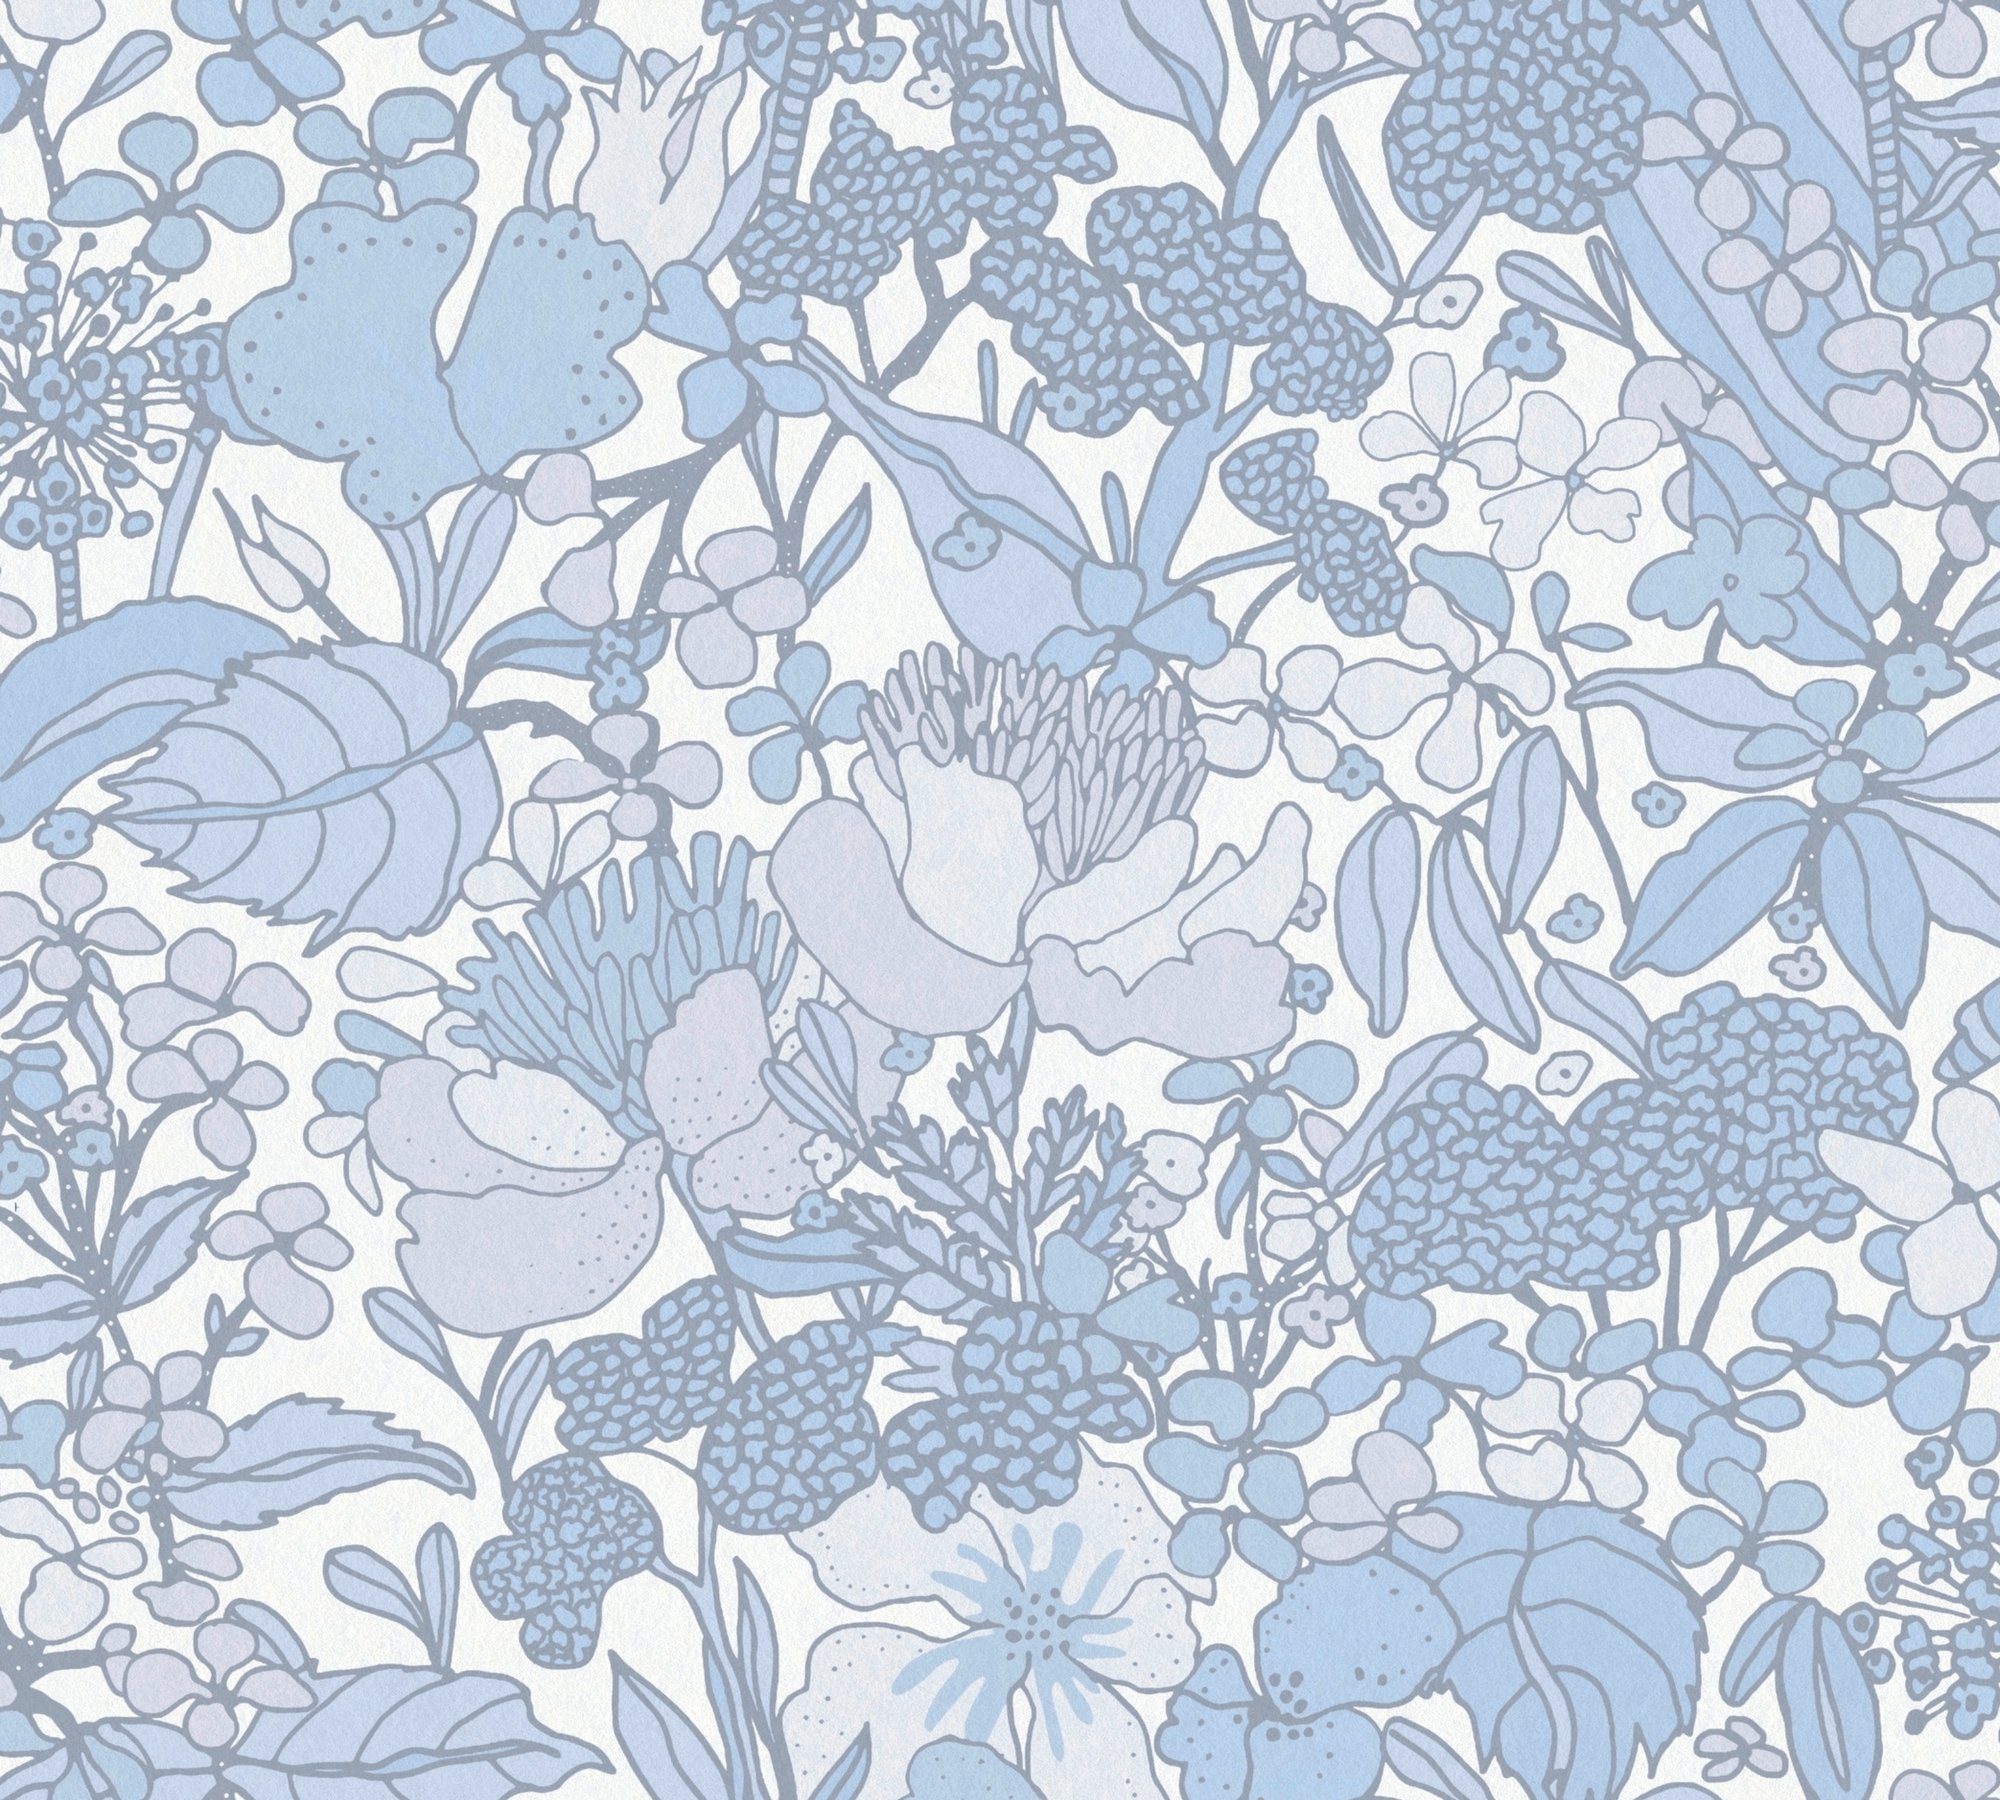 Architects Paper Vliestapete Impression, Tapete Dschungel glatt, Floral Blumentapete grau/blau/weiß botanisch, floral